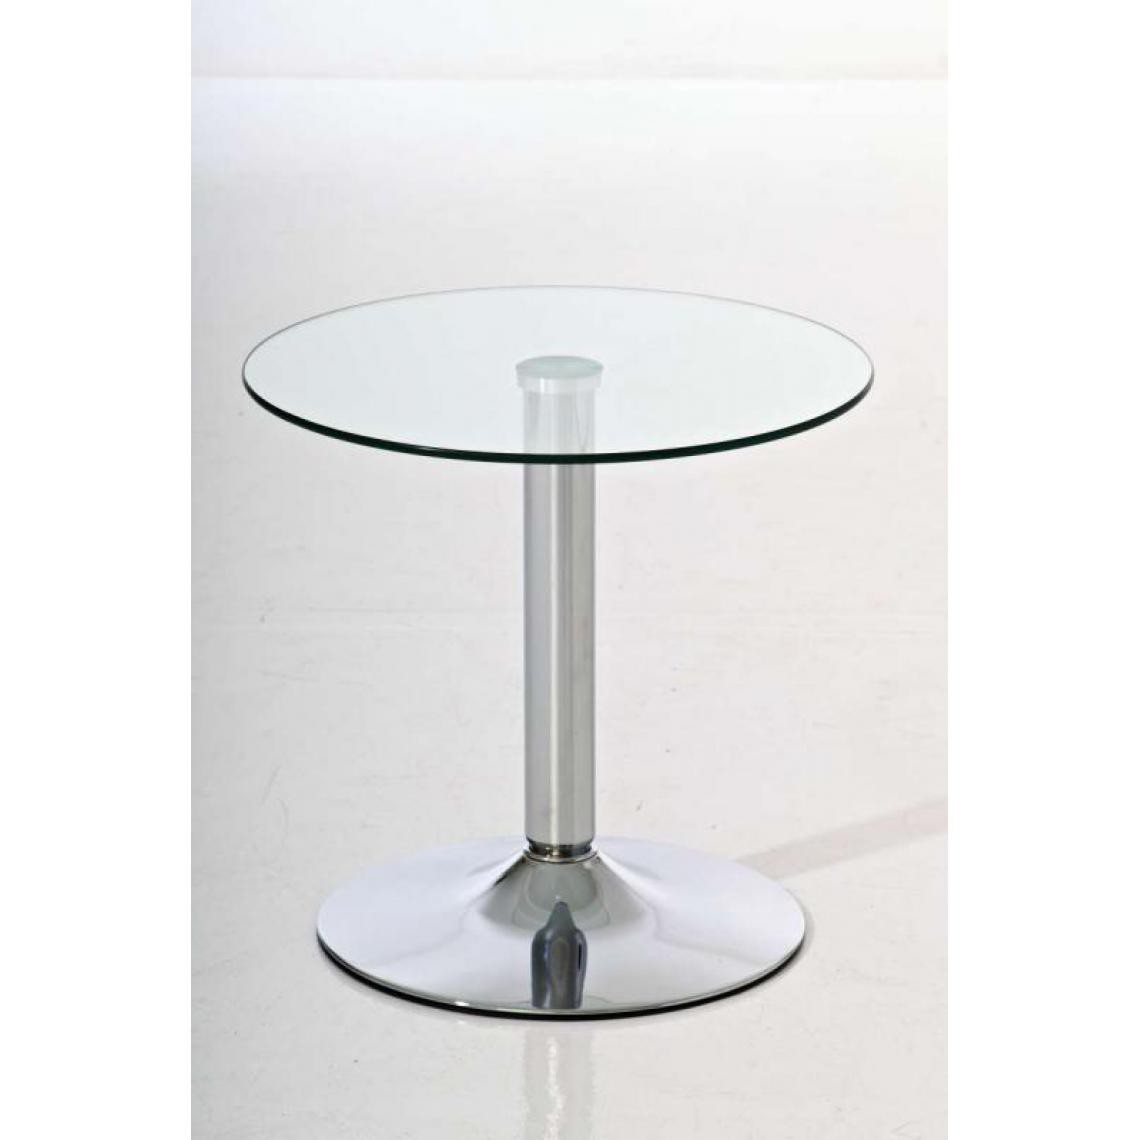 Icaverne - Contemporain Table en verre categorie Riyad couleur Verre propre - Tables à manger